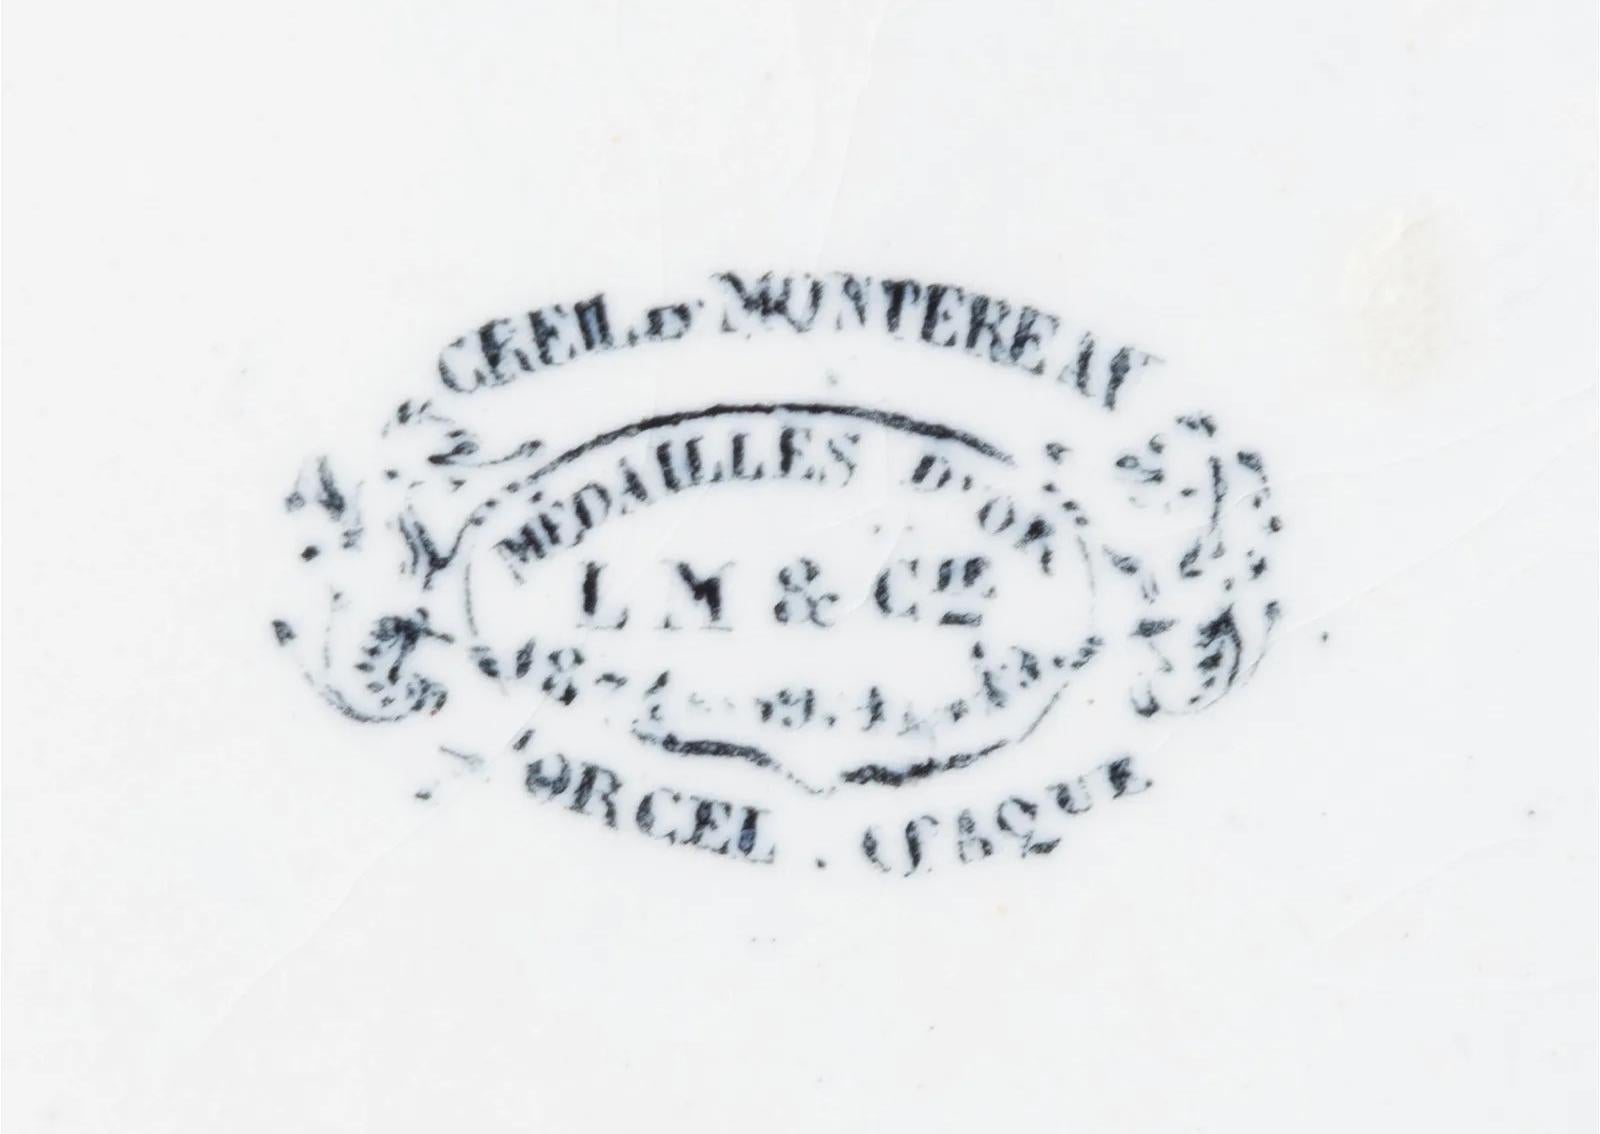 Assiettes à feuilles en poterie de Creil et Montereau,
Ensemble de douze assiettes,
vers 1840

Les douze assiettes en faïence de la société Creil et Montereau sont circulaires avec un fond bleu profond sur le bord. Tout le centre est sous la